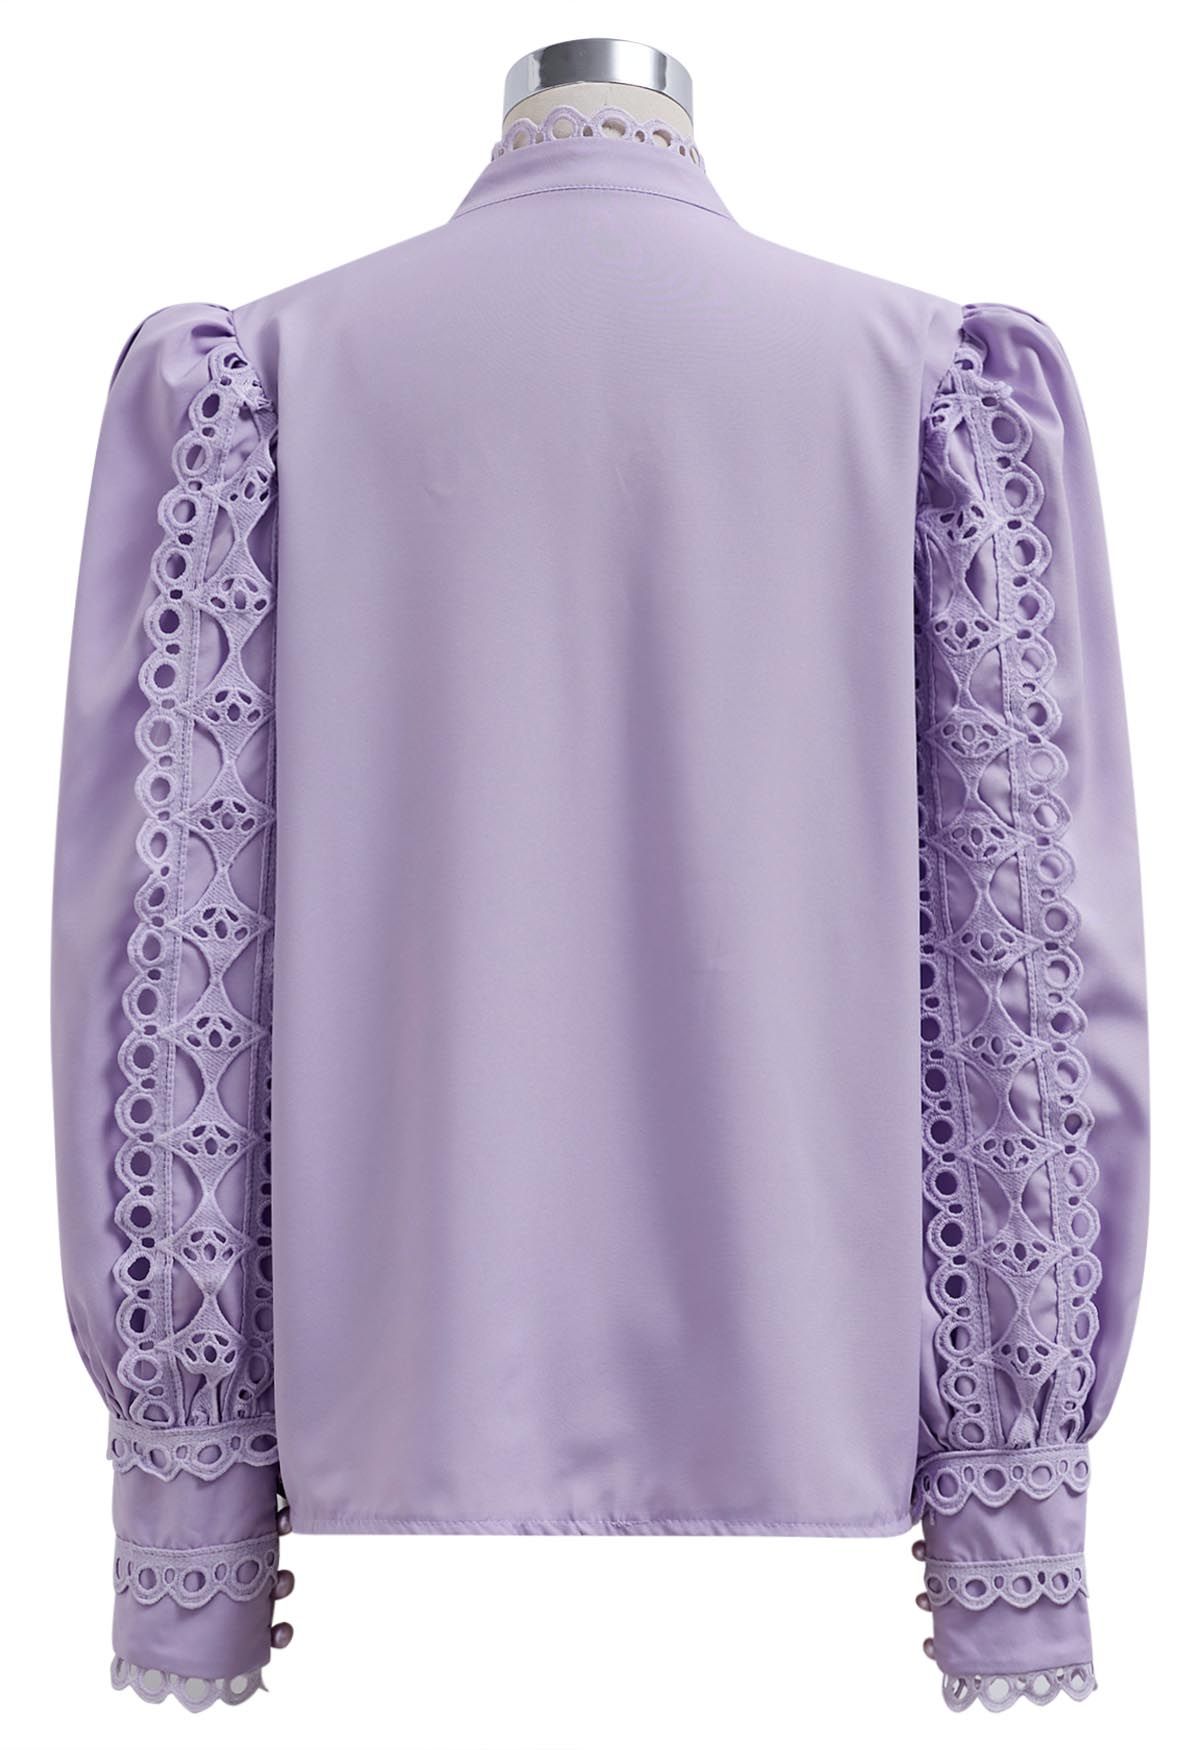 Chemise boutonnée à manches bulles et découpes exquises en lilas